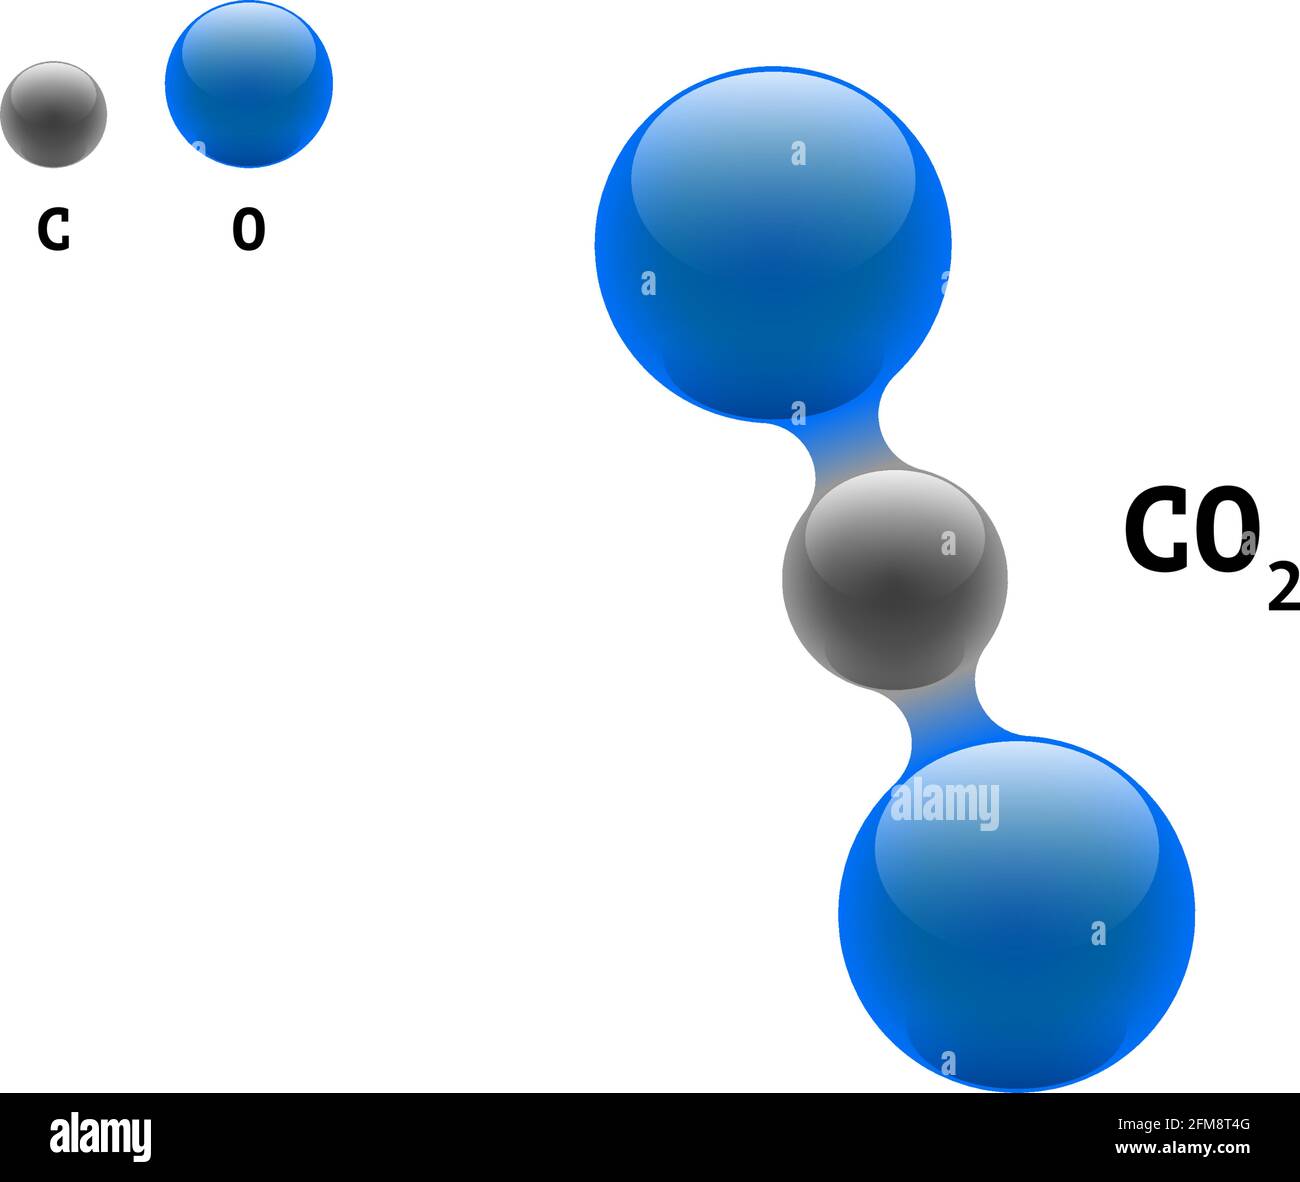 Chemie-Modell Molekül Kohlendioxid CO2 wissenschaftliche Element Formel. Integrierte Partikel natürliche anorganische 3D molekulare Struktur bestehend. Zwei Sauerstoff- und Kohlenstoffvolumen-Atom eps-Vektorkugeln Stock Vektor